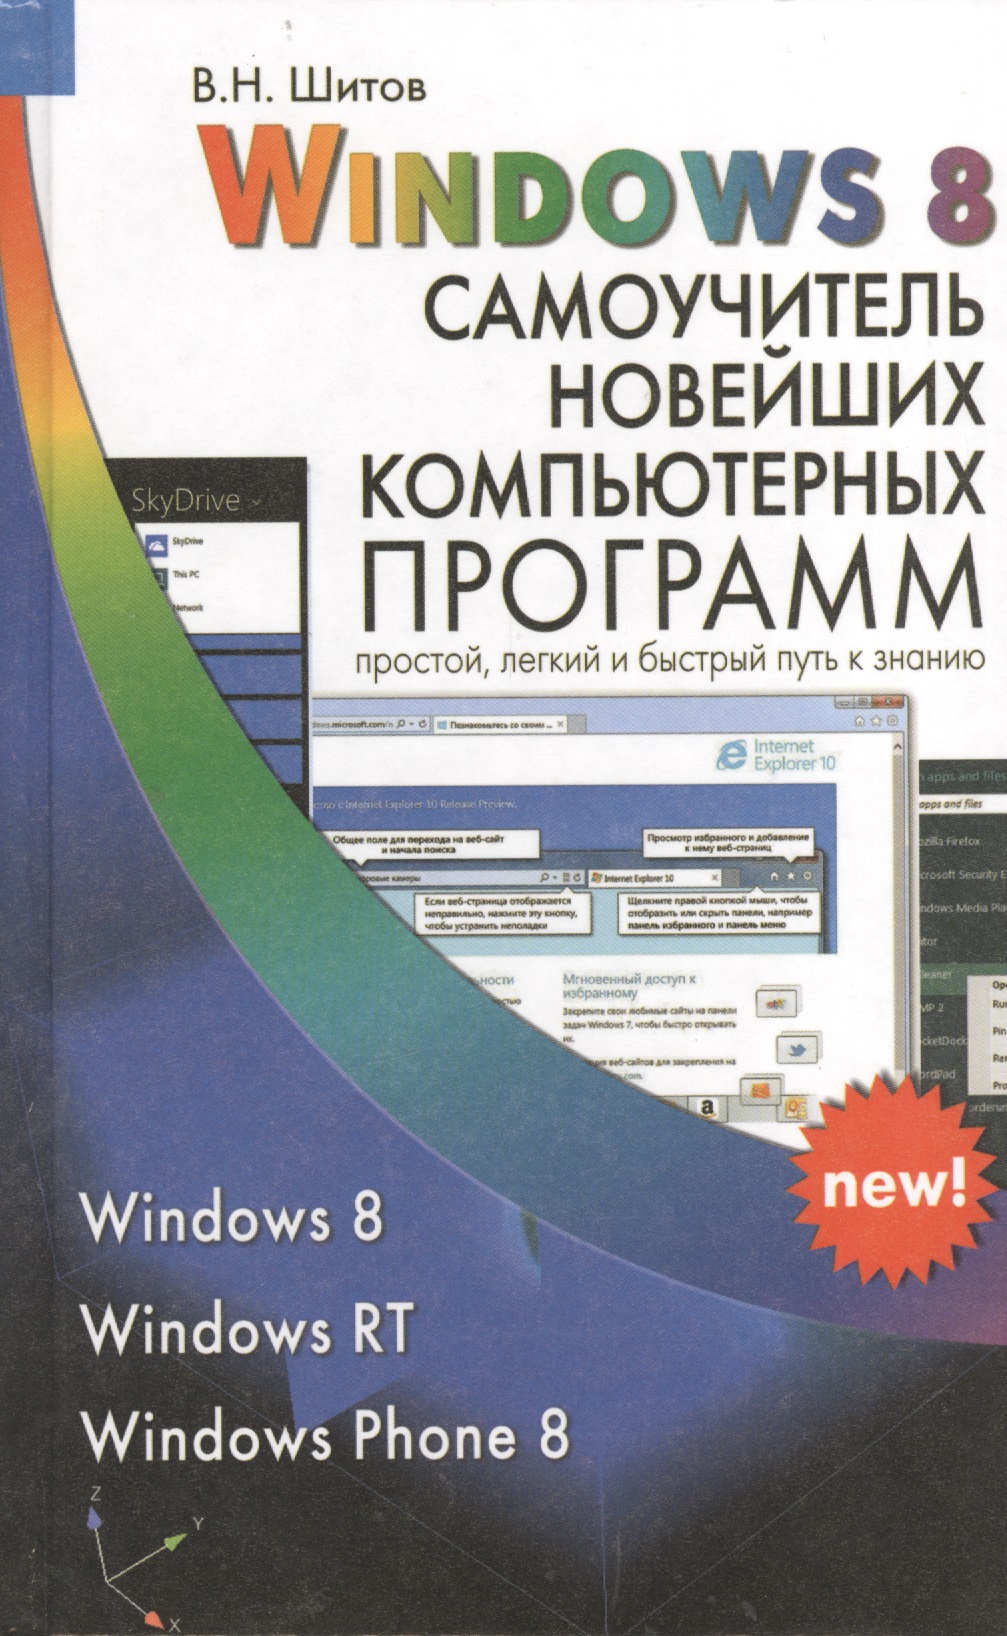 Шитов Виктор Николаевич Windows 8 Самоучитель новейших компьютерных программ (Шитов)